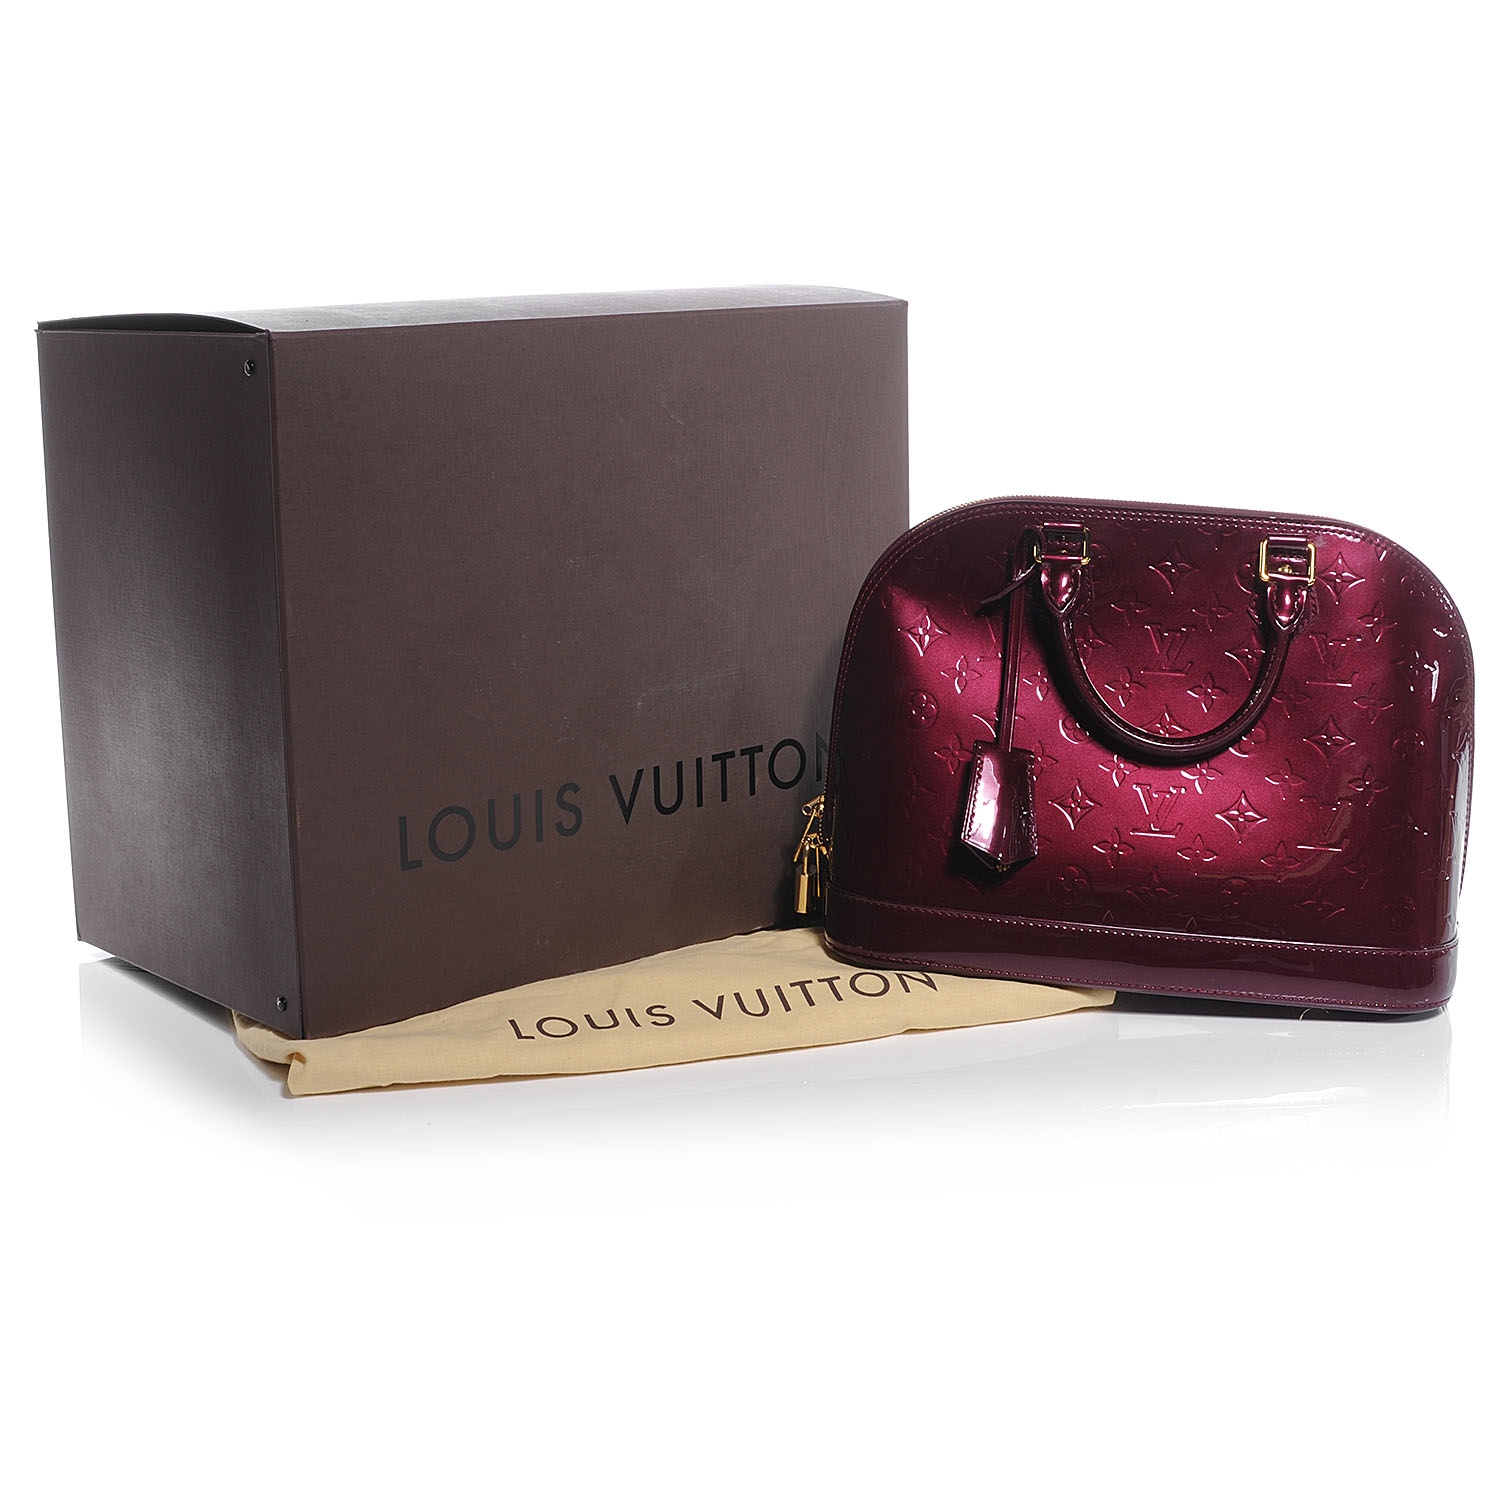 Louis Vuitton Scott Box  Natural Resource Department